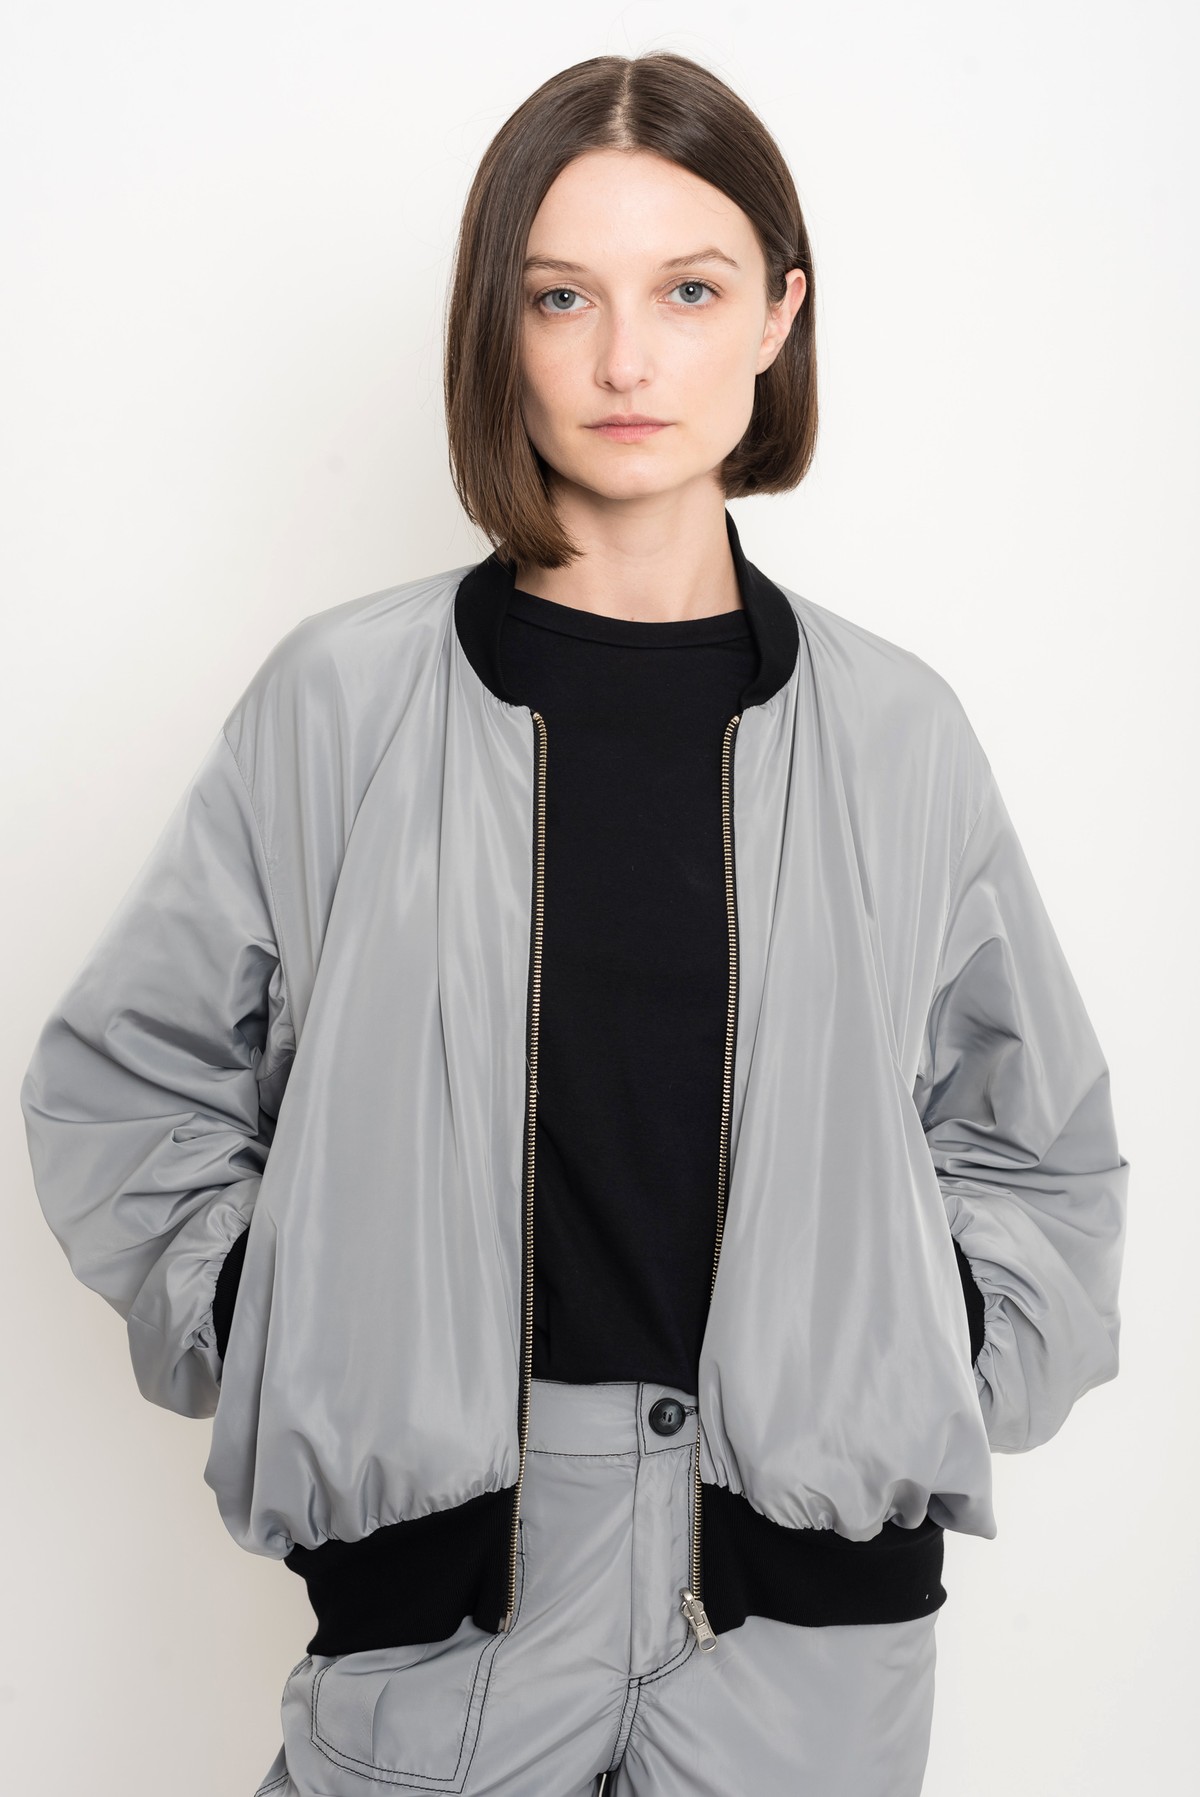 jaqueta reversível bicolor | bicolor reversible jacket